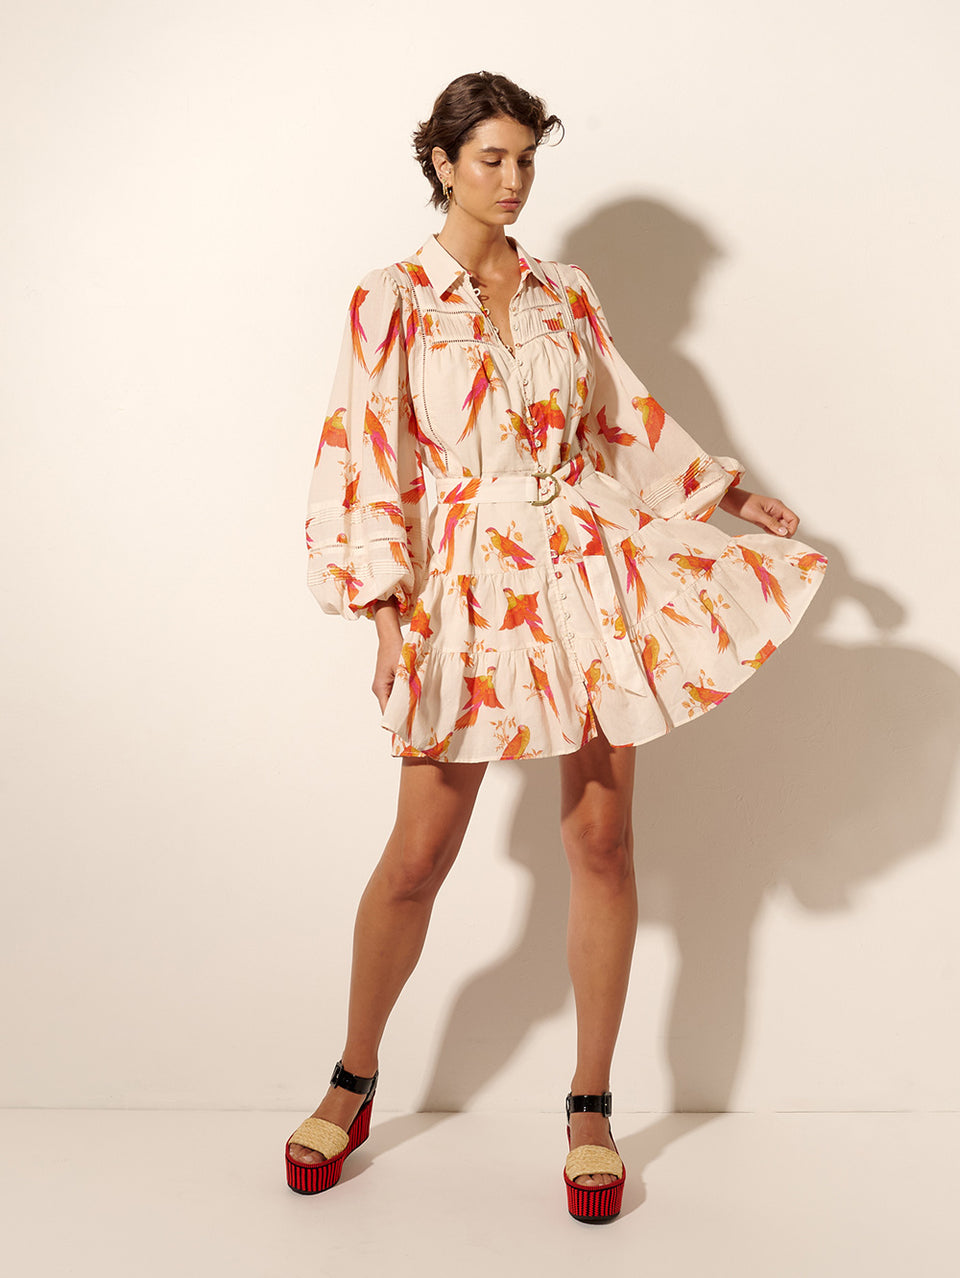 Kaylee Mini Dress KIVARI | Model wears pink and orange bird print mini dress